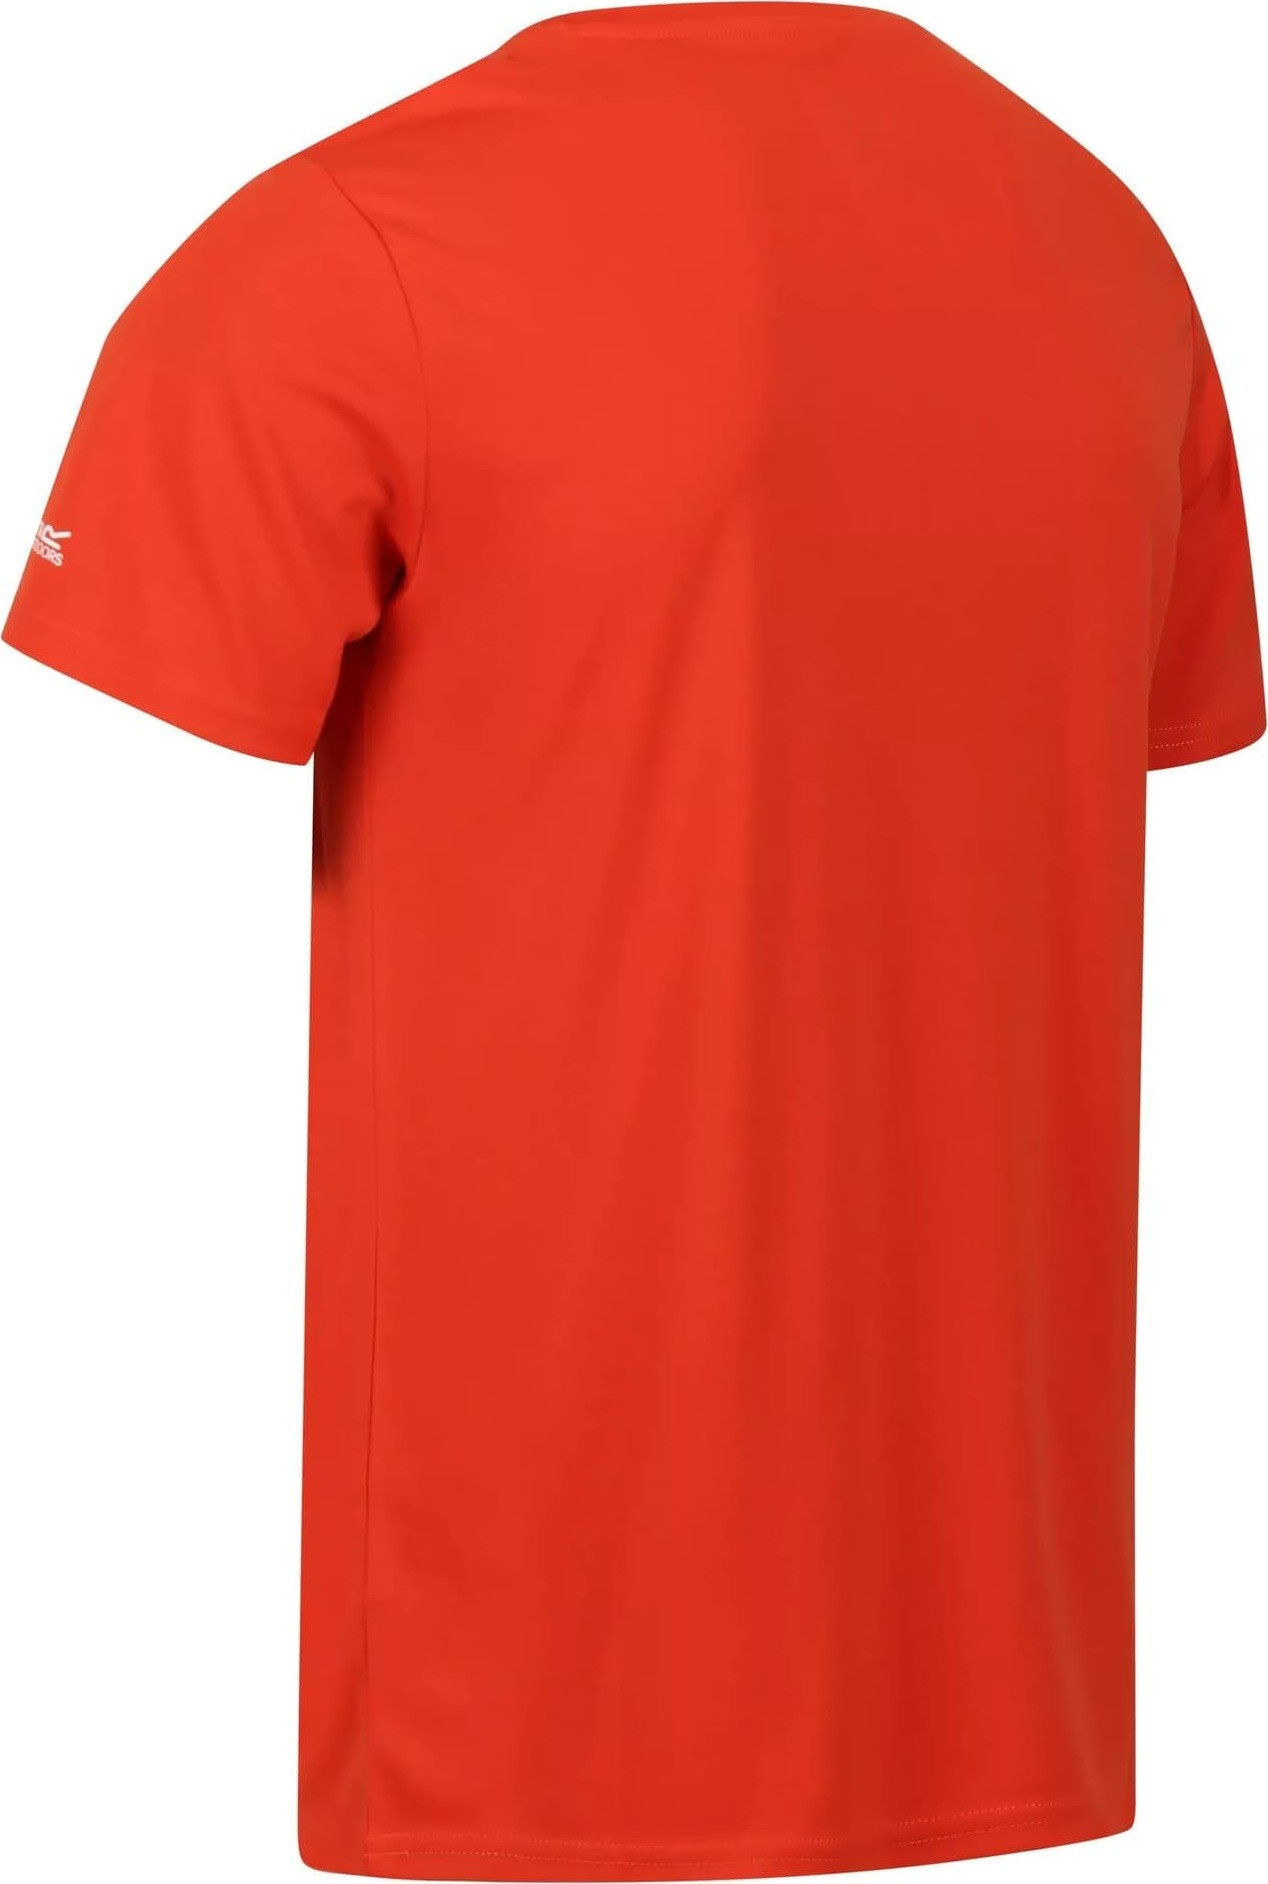 Pánské tričko Regatta Fingal VII RMT272-33L oranžové Oranžová XL